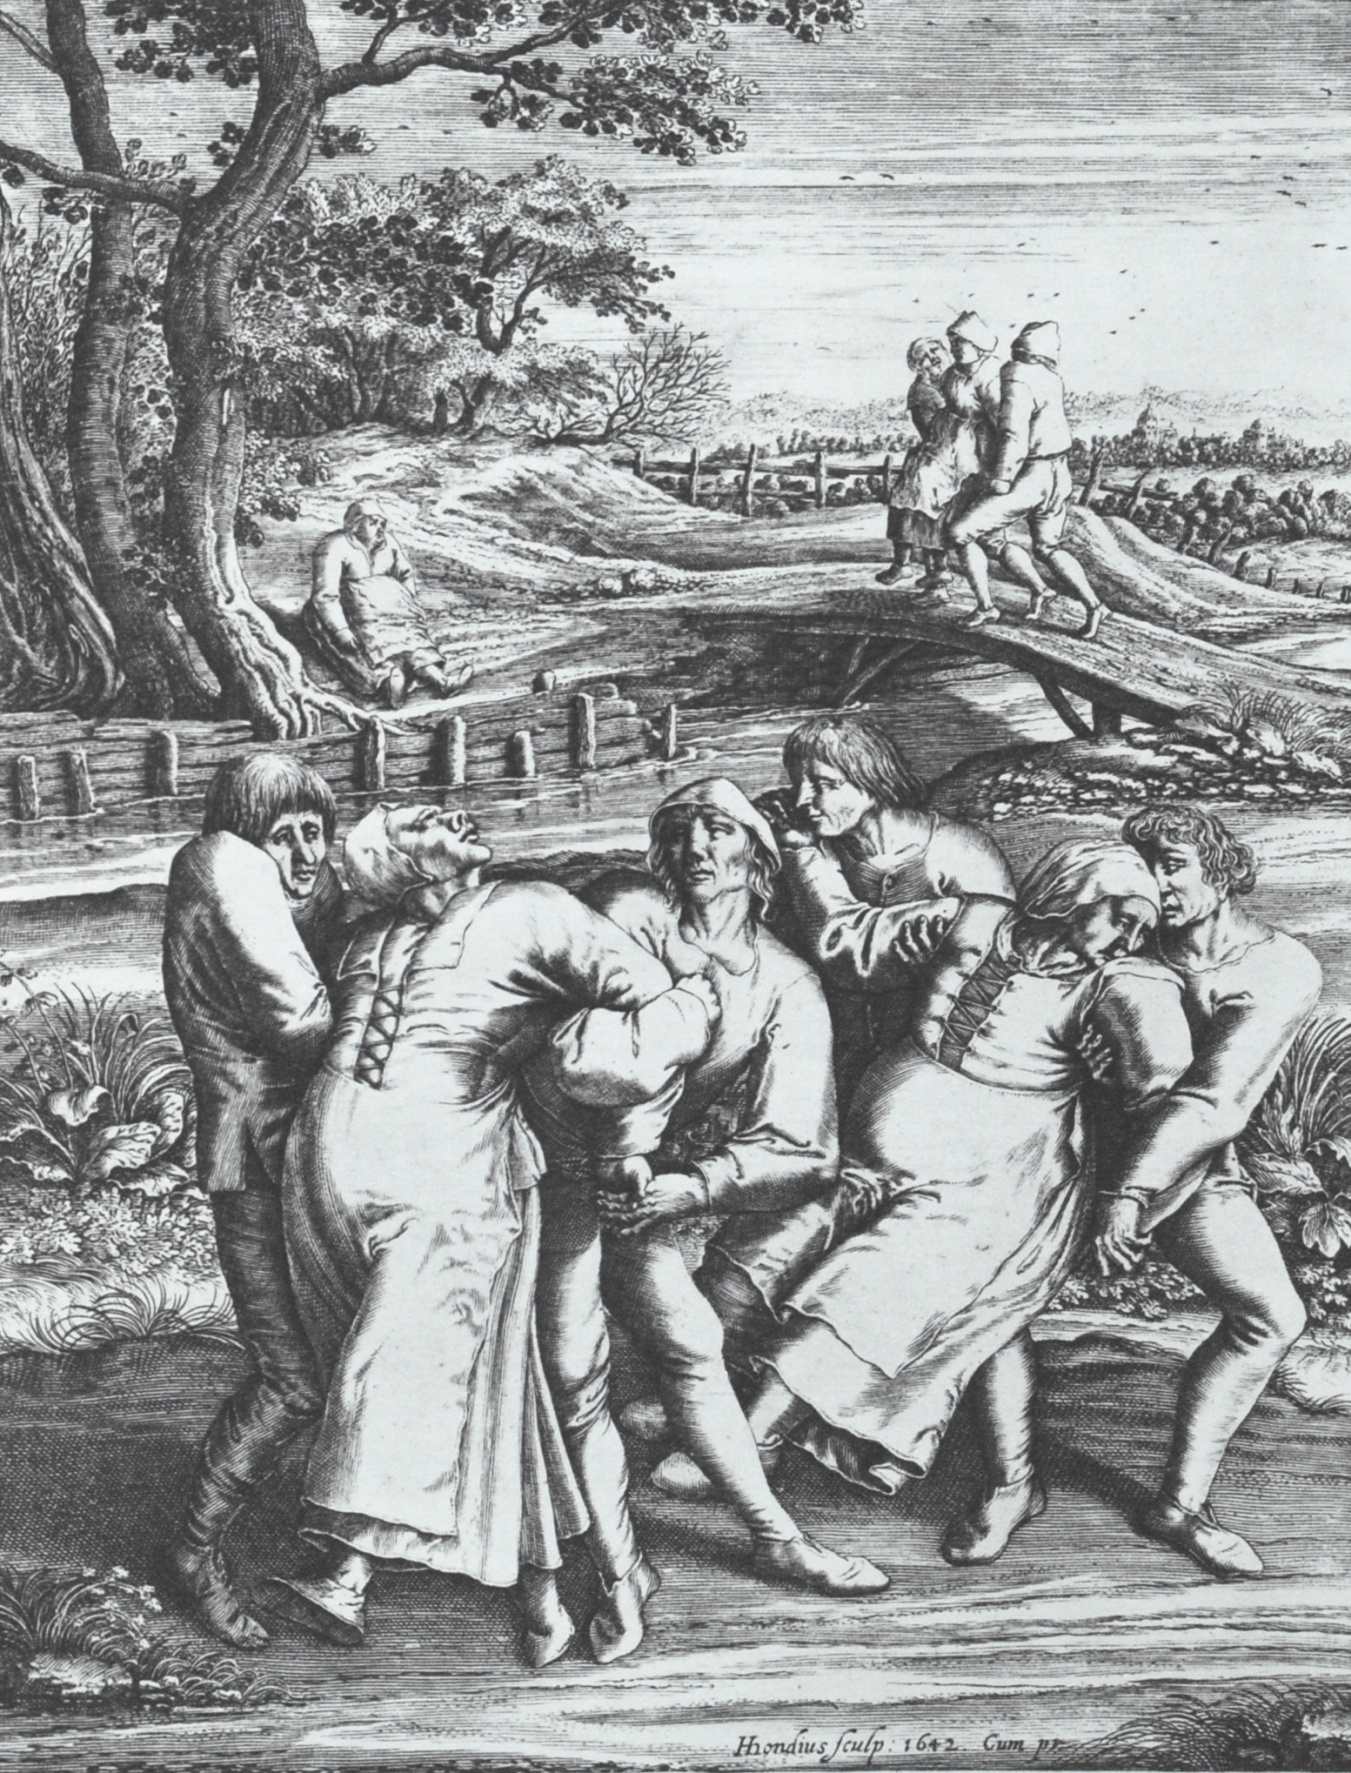 Peste dansante de 1518